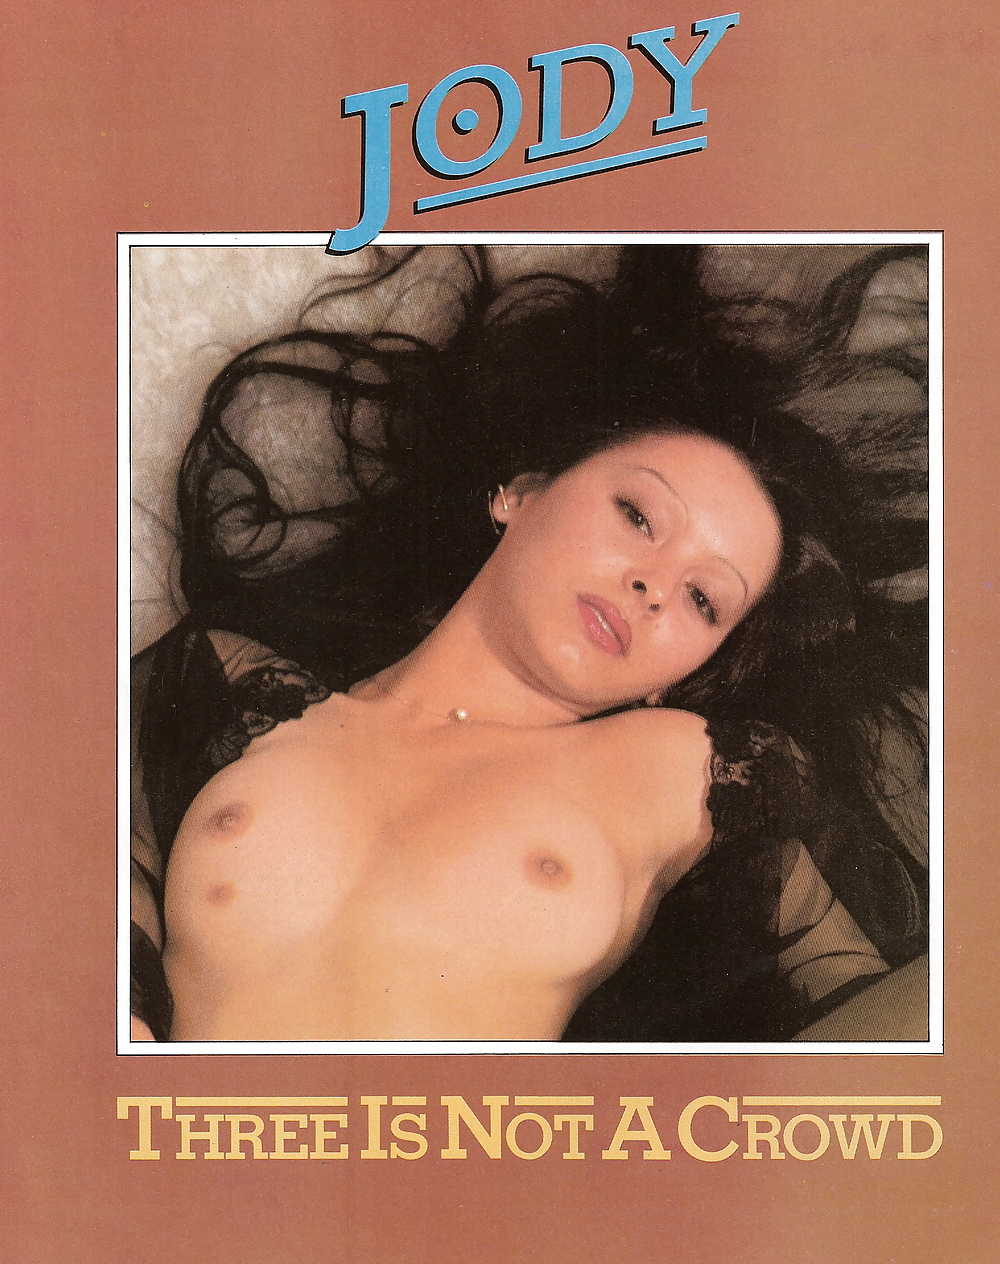 ハスラー1977年5月号 - ジョディ - 3つの乳首を持つ女性!
 #24748570